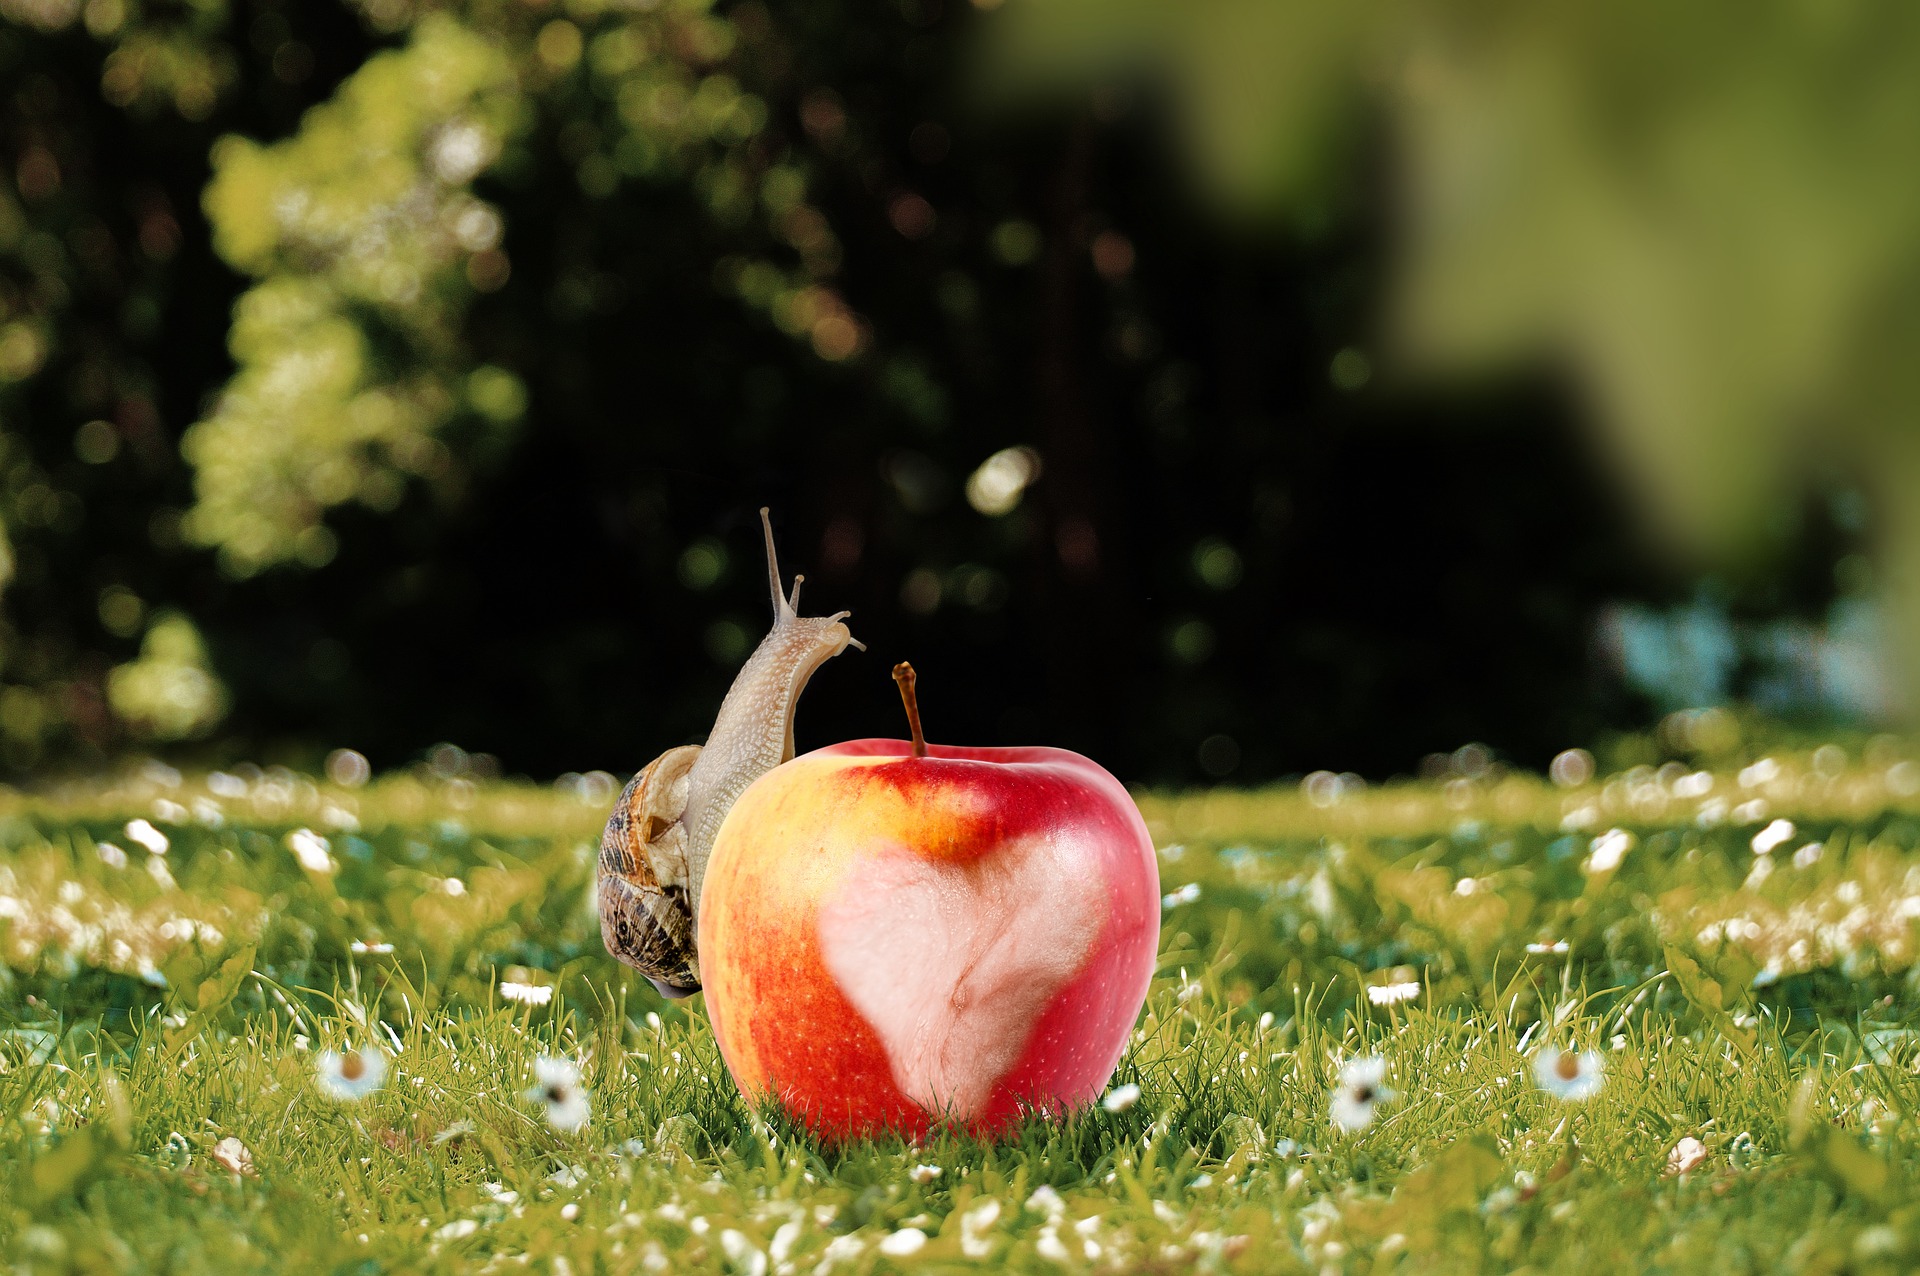 Snail on the apple photo